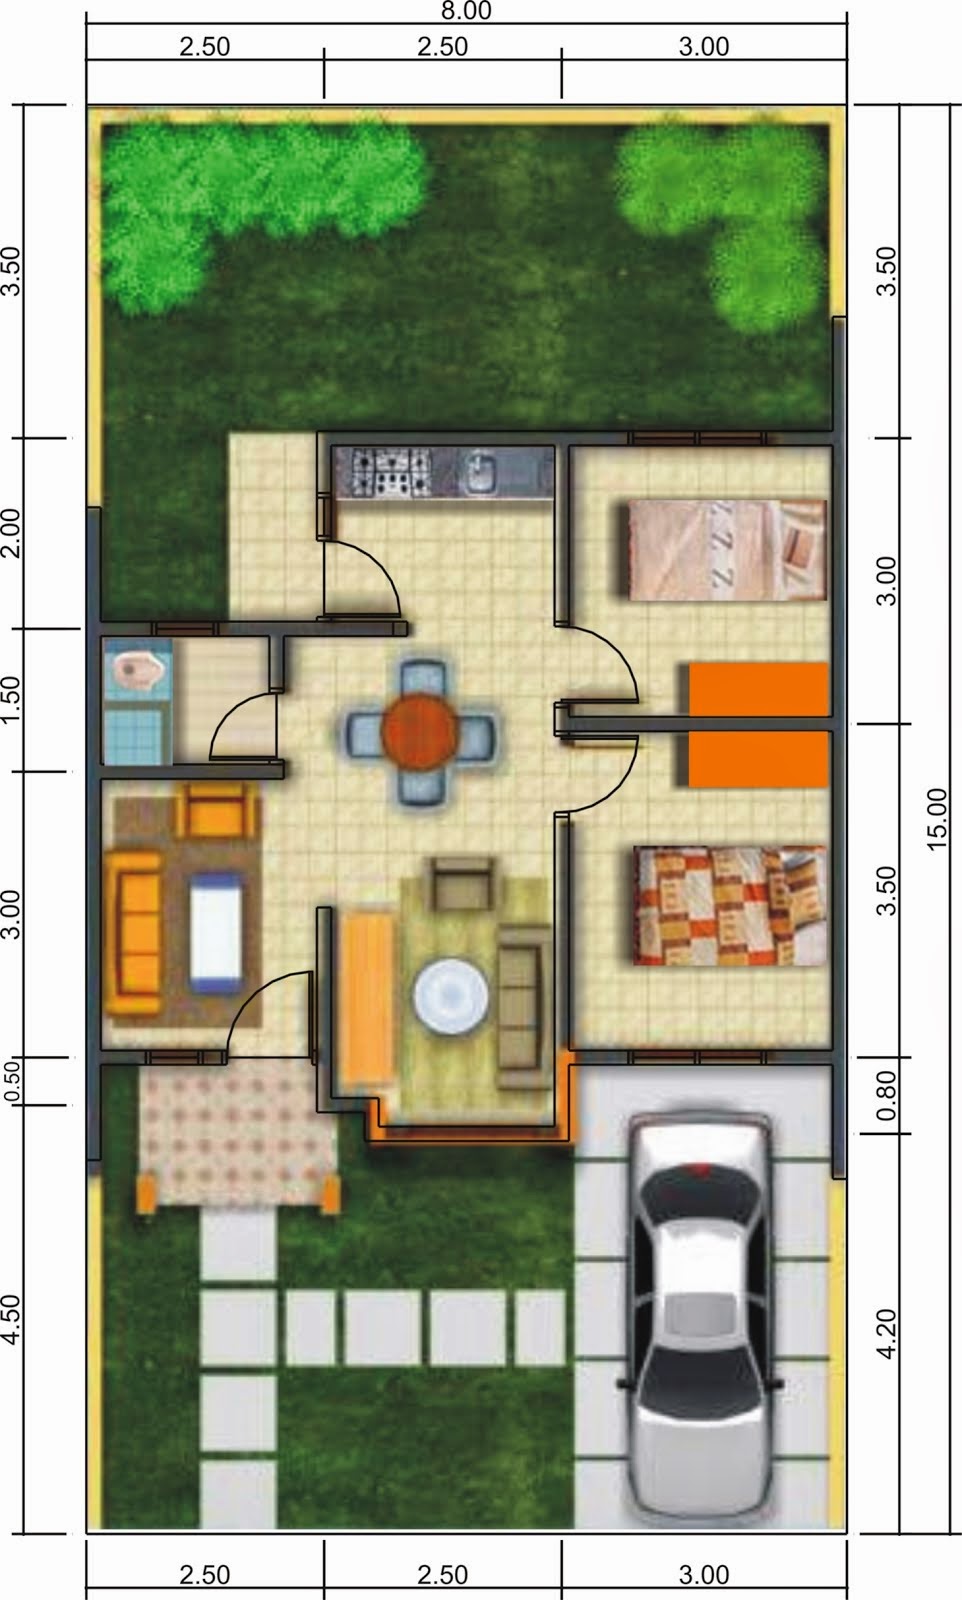 Contoh Sketsa Rumah Minimalis 1 Lantai Desain Rumah Minimalis